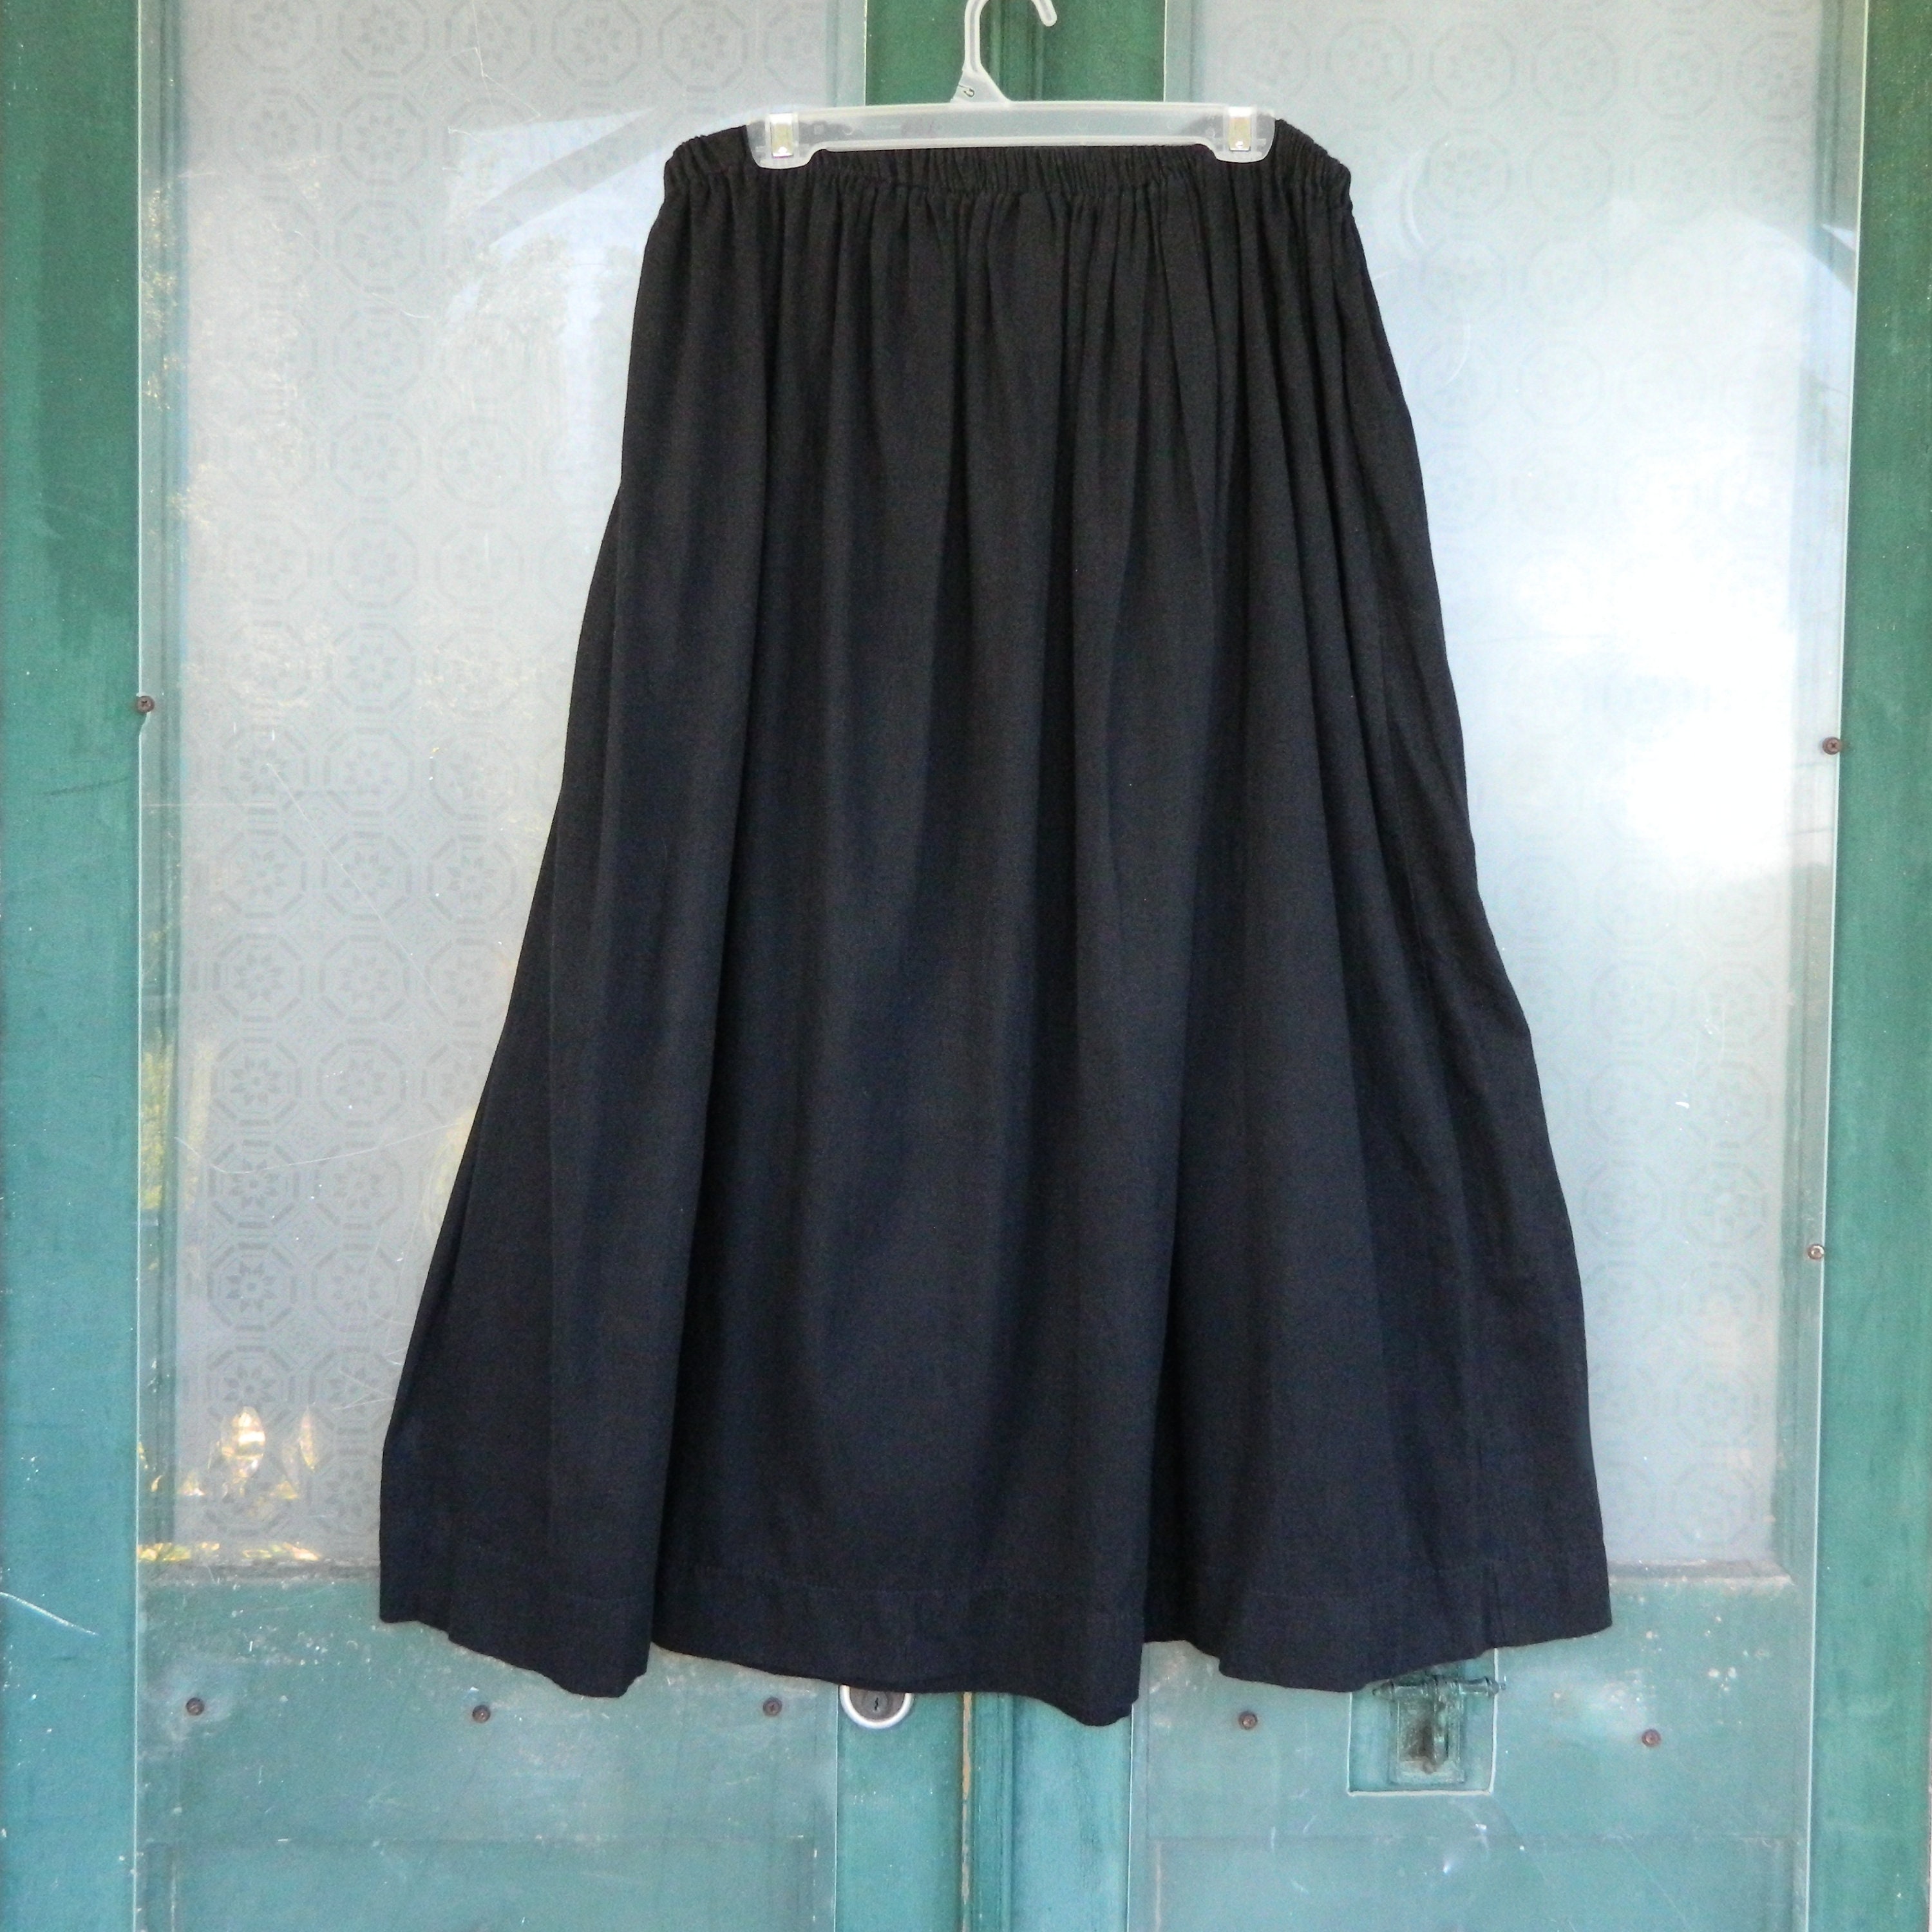 Gene Ewing BIS Full Skirt -M- Black Cotton